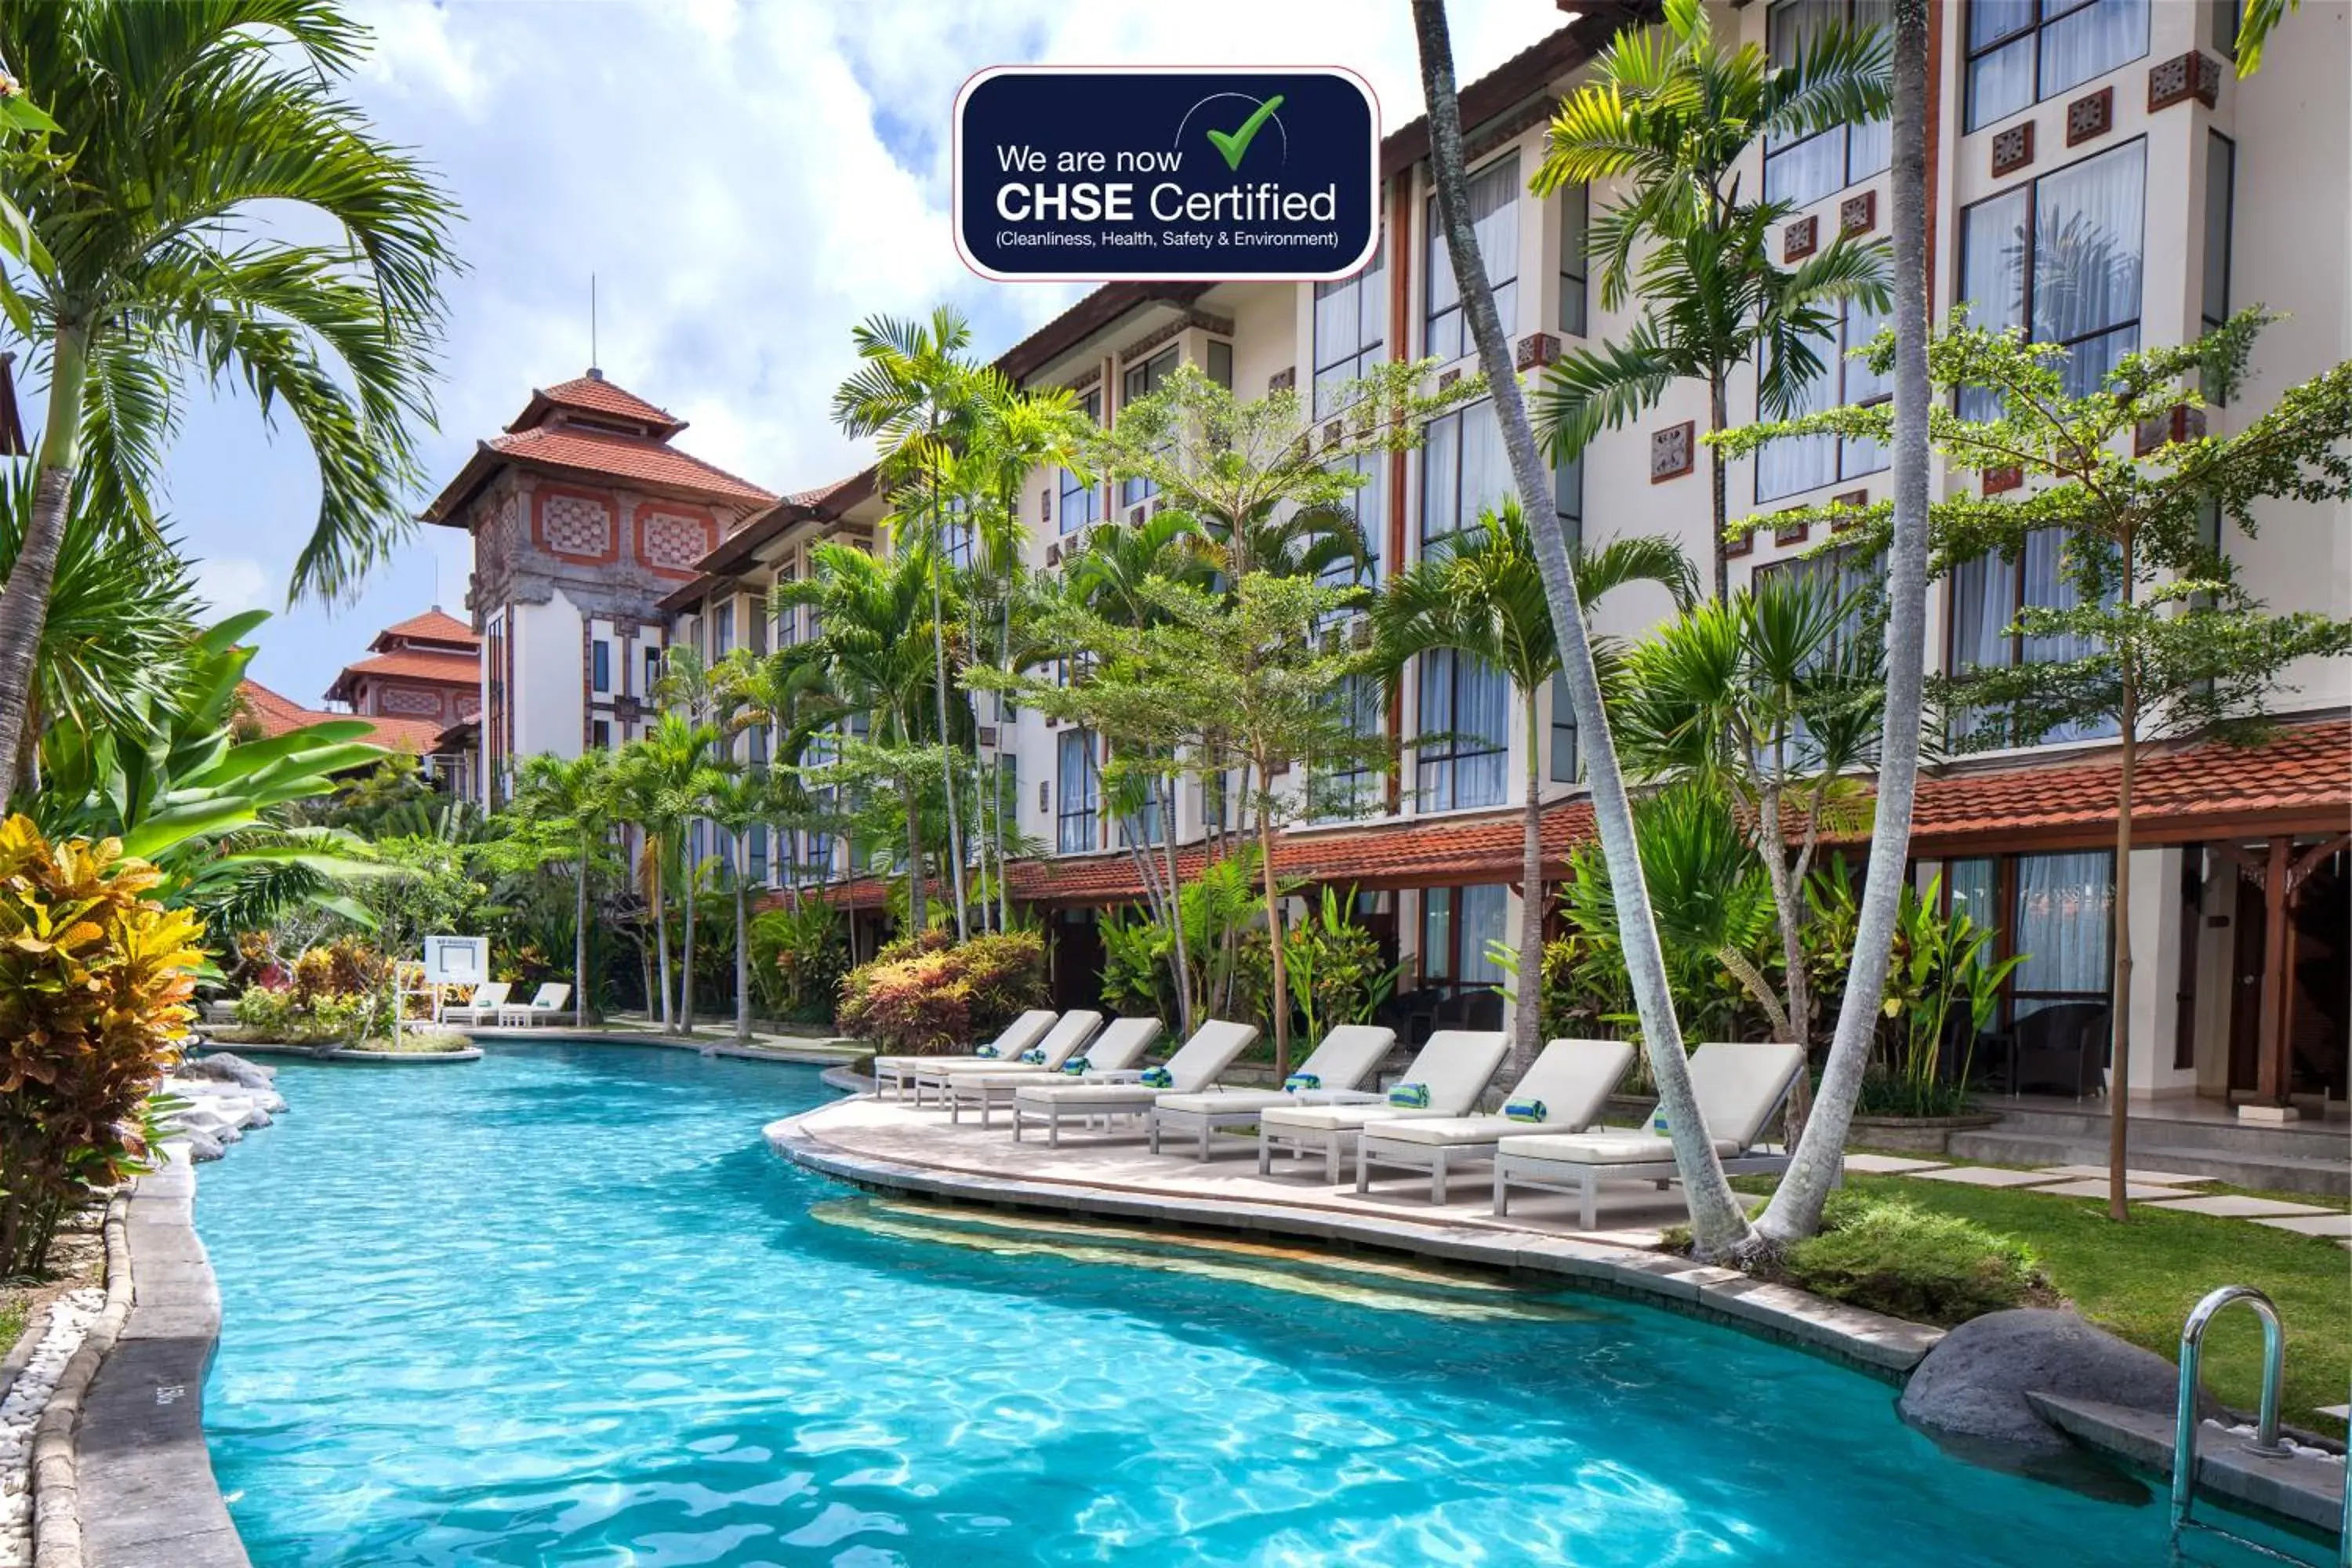 Swimming pool in Prime Plaza Hotel Sanur – Bali